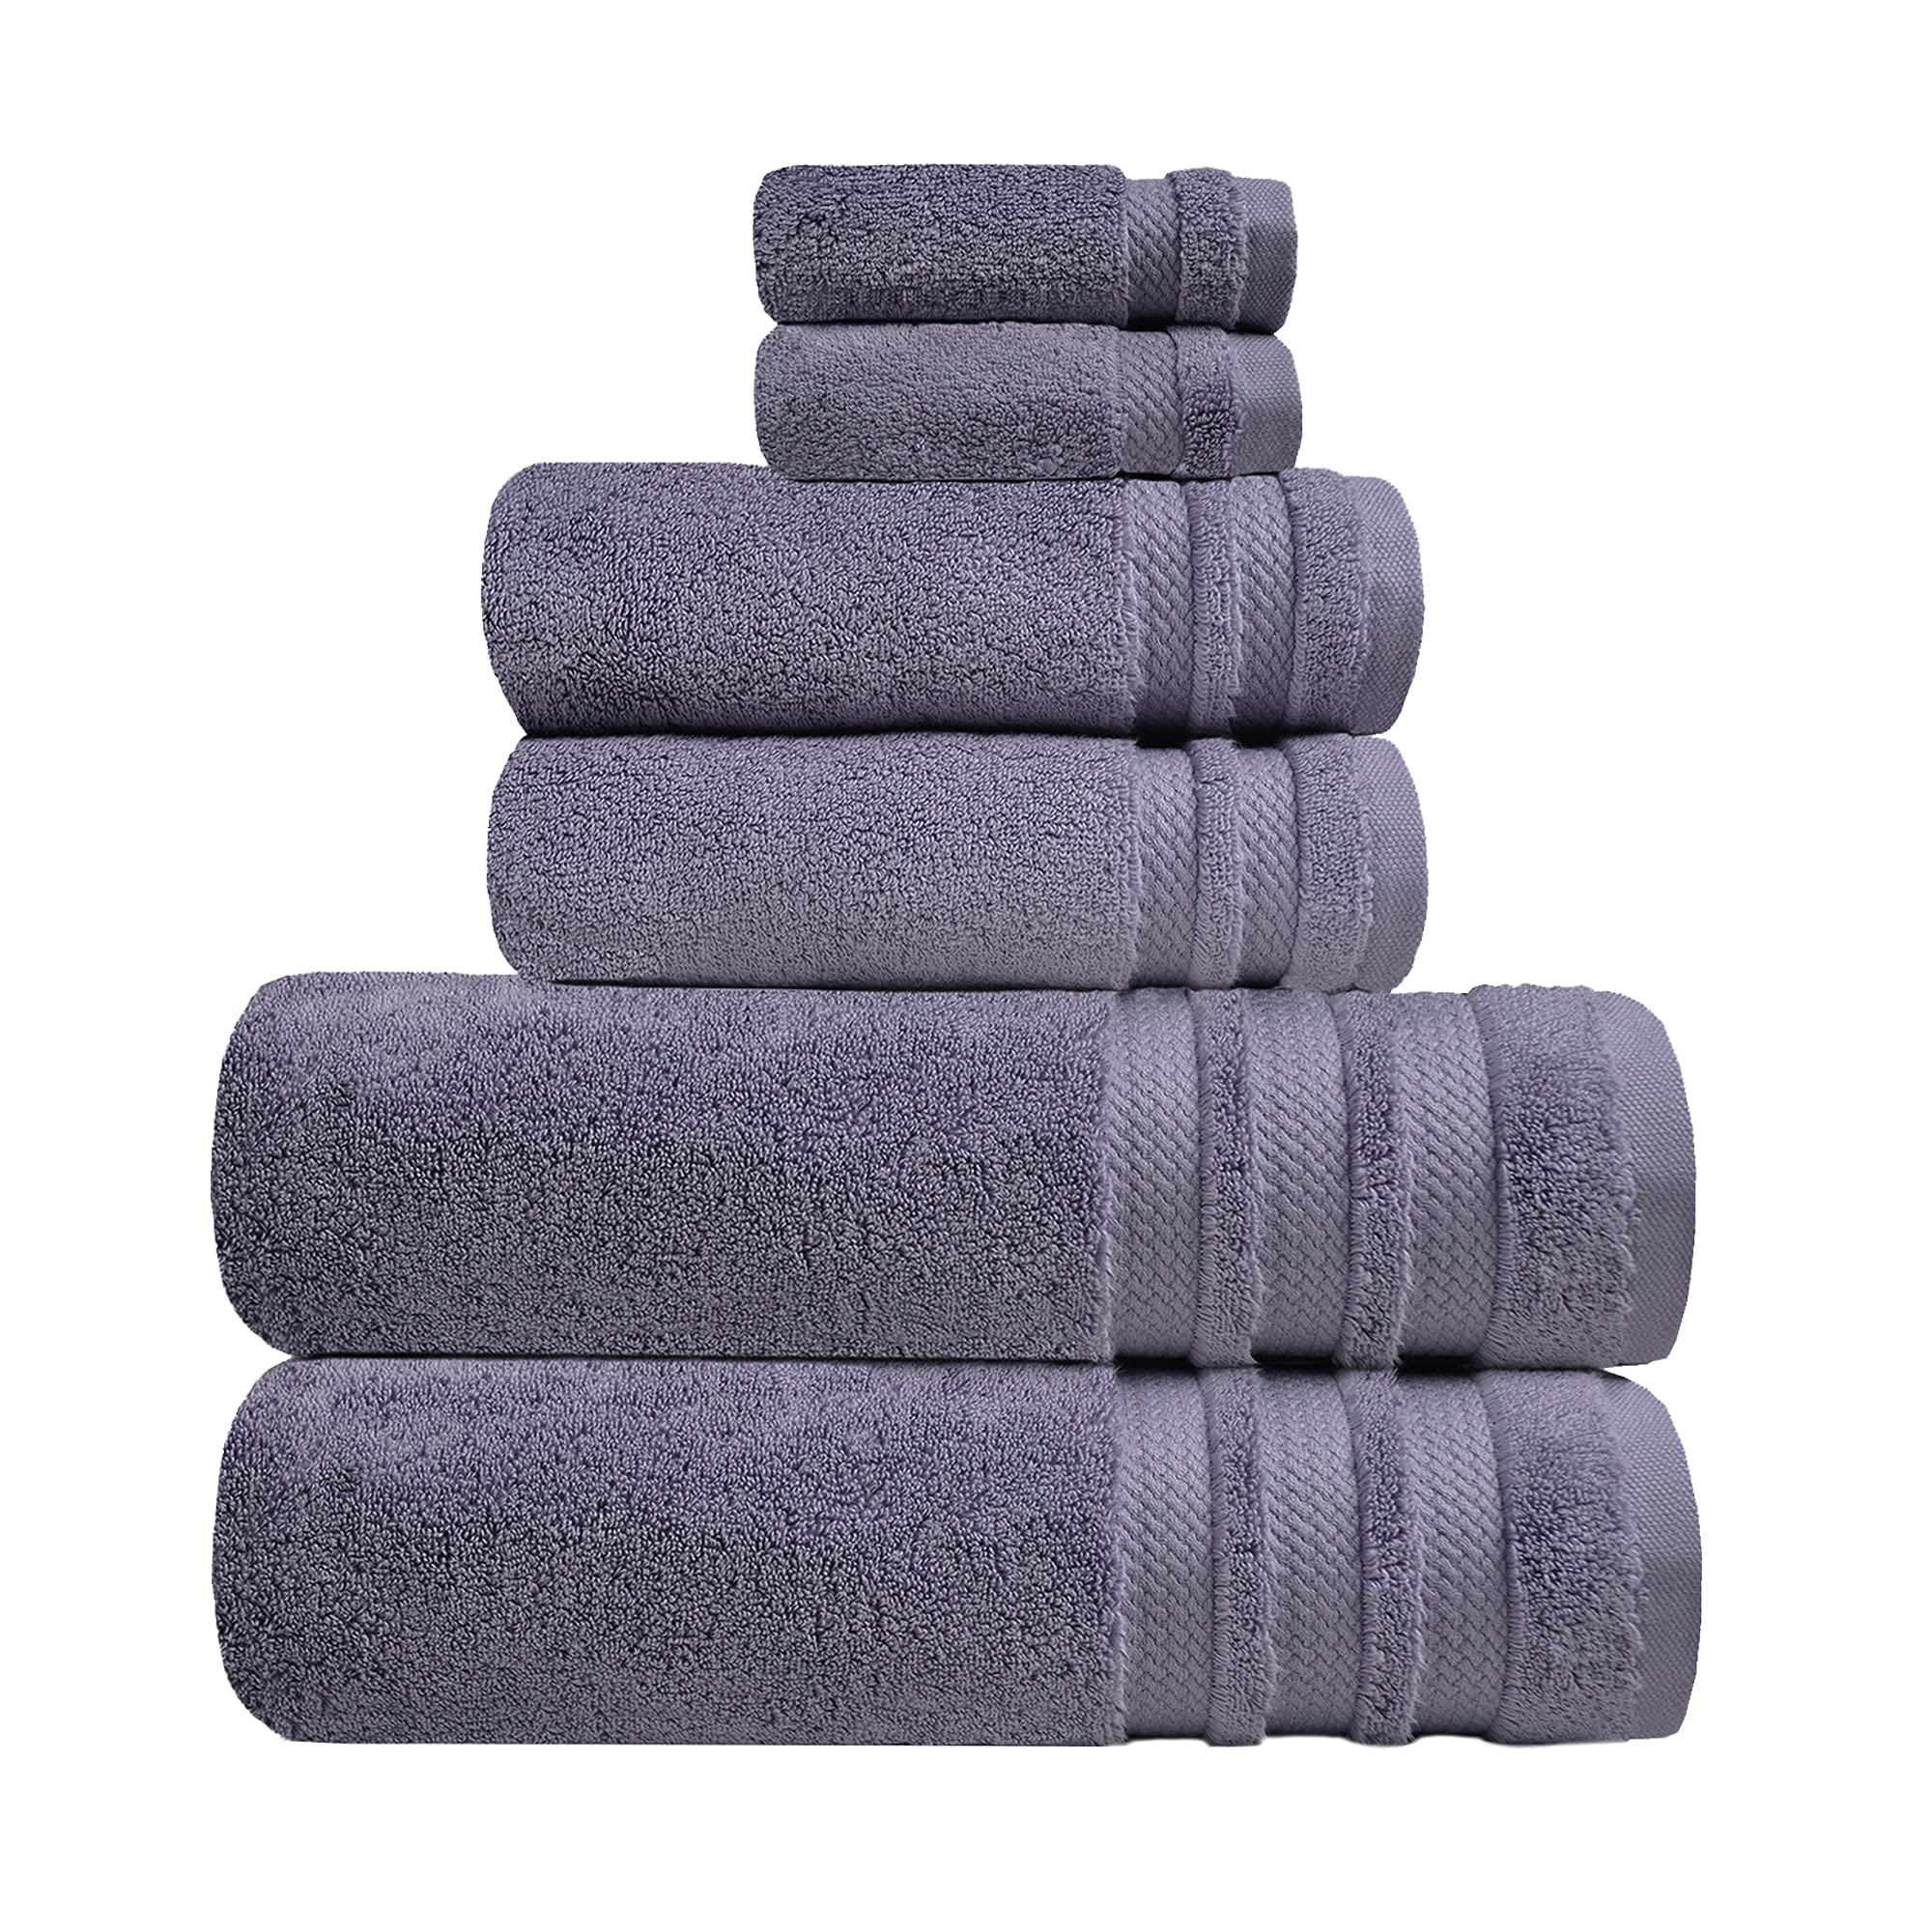 Trident Soft N Plush, 6 Piece Washcloths/Hand/Bath Towels, Silver